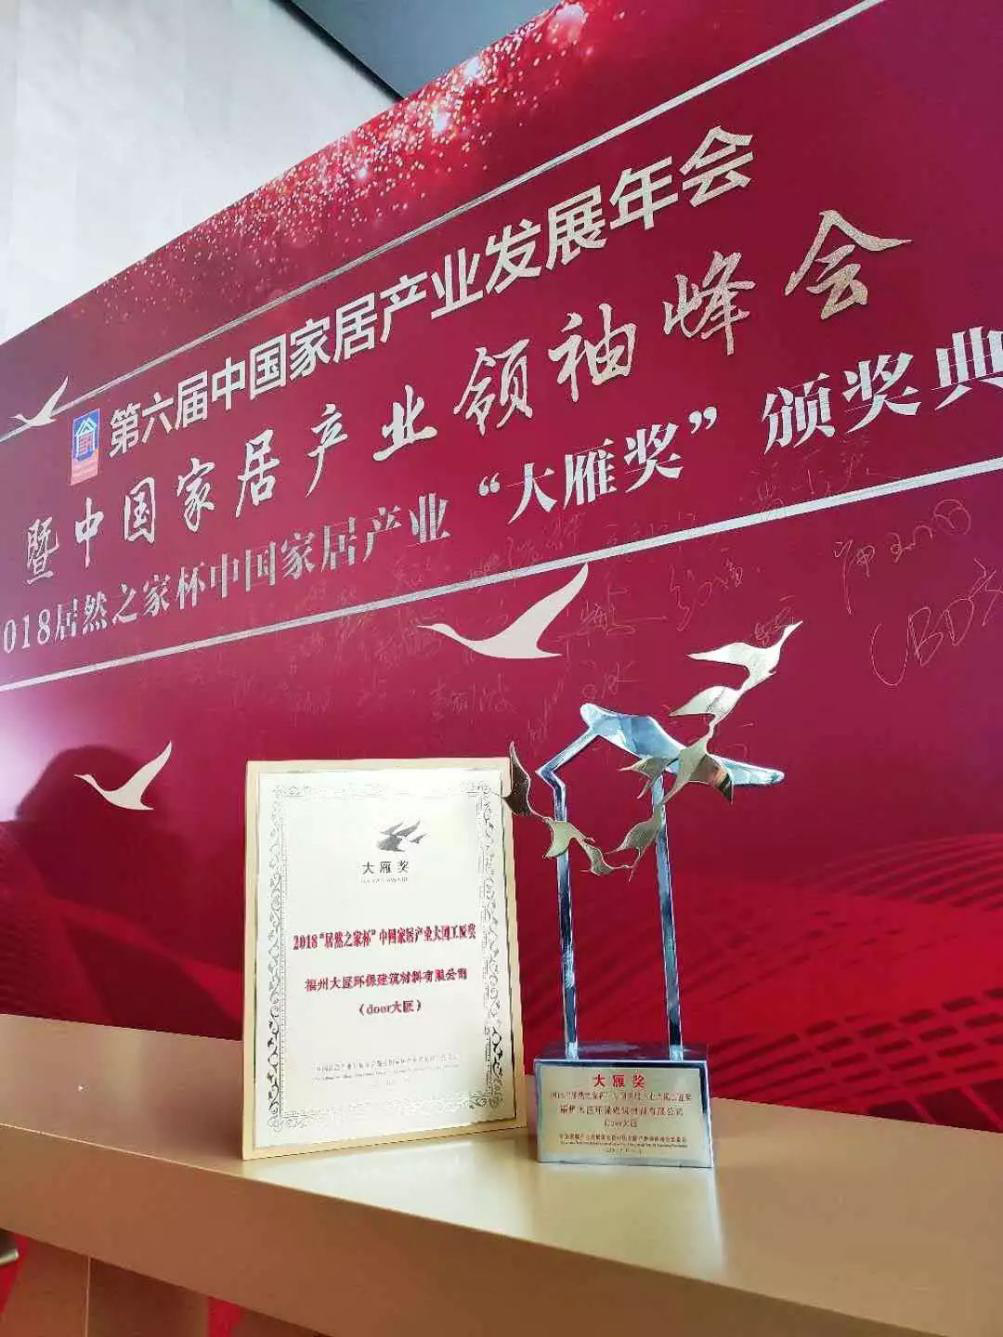 坚守品质、赢得口碑，大匠荣获“2018中国家居产业大国工匠奖”